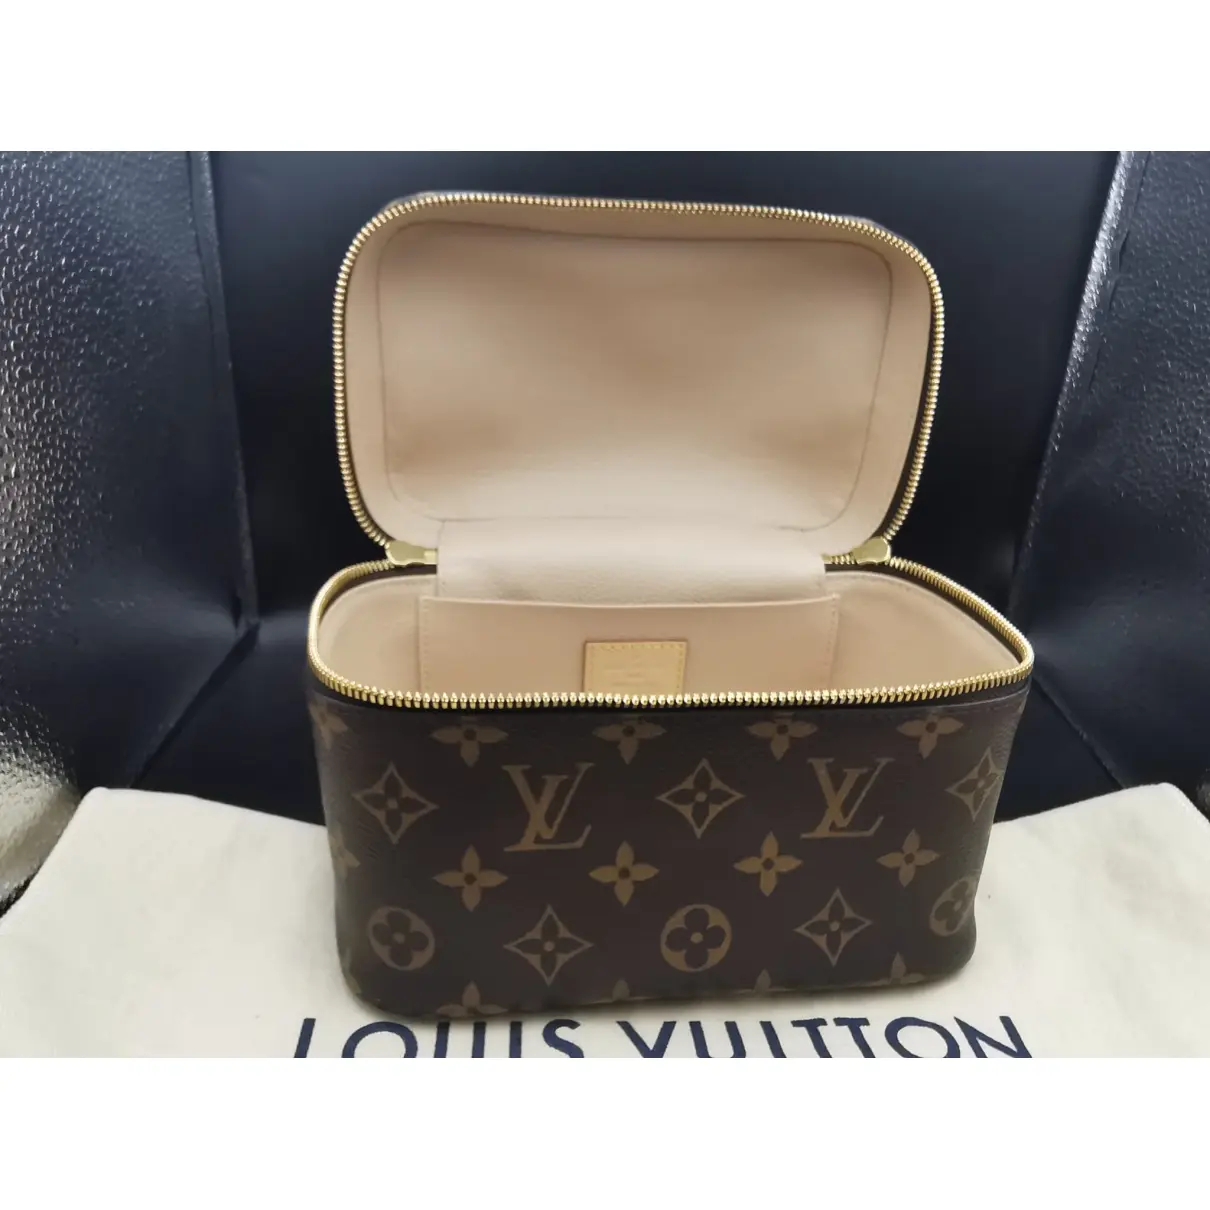 Buy Louis Vuitton Nano Noé leather mini bag online